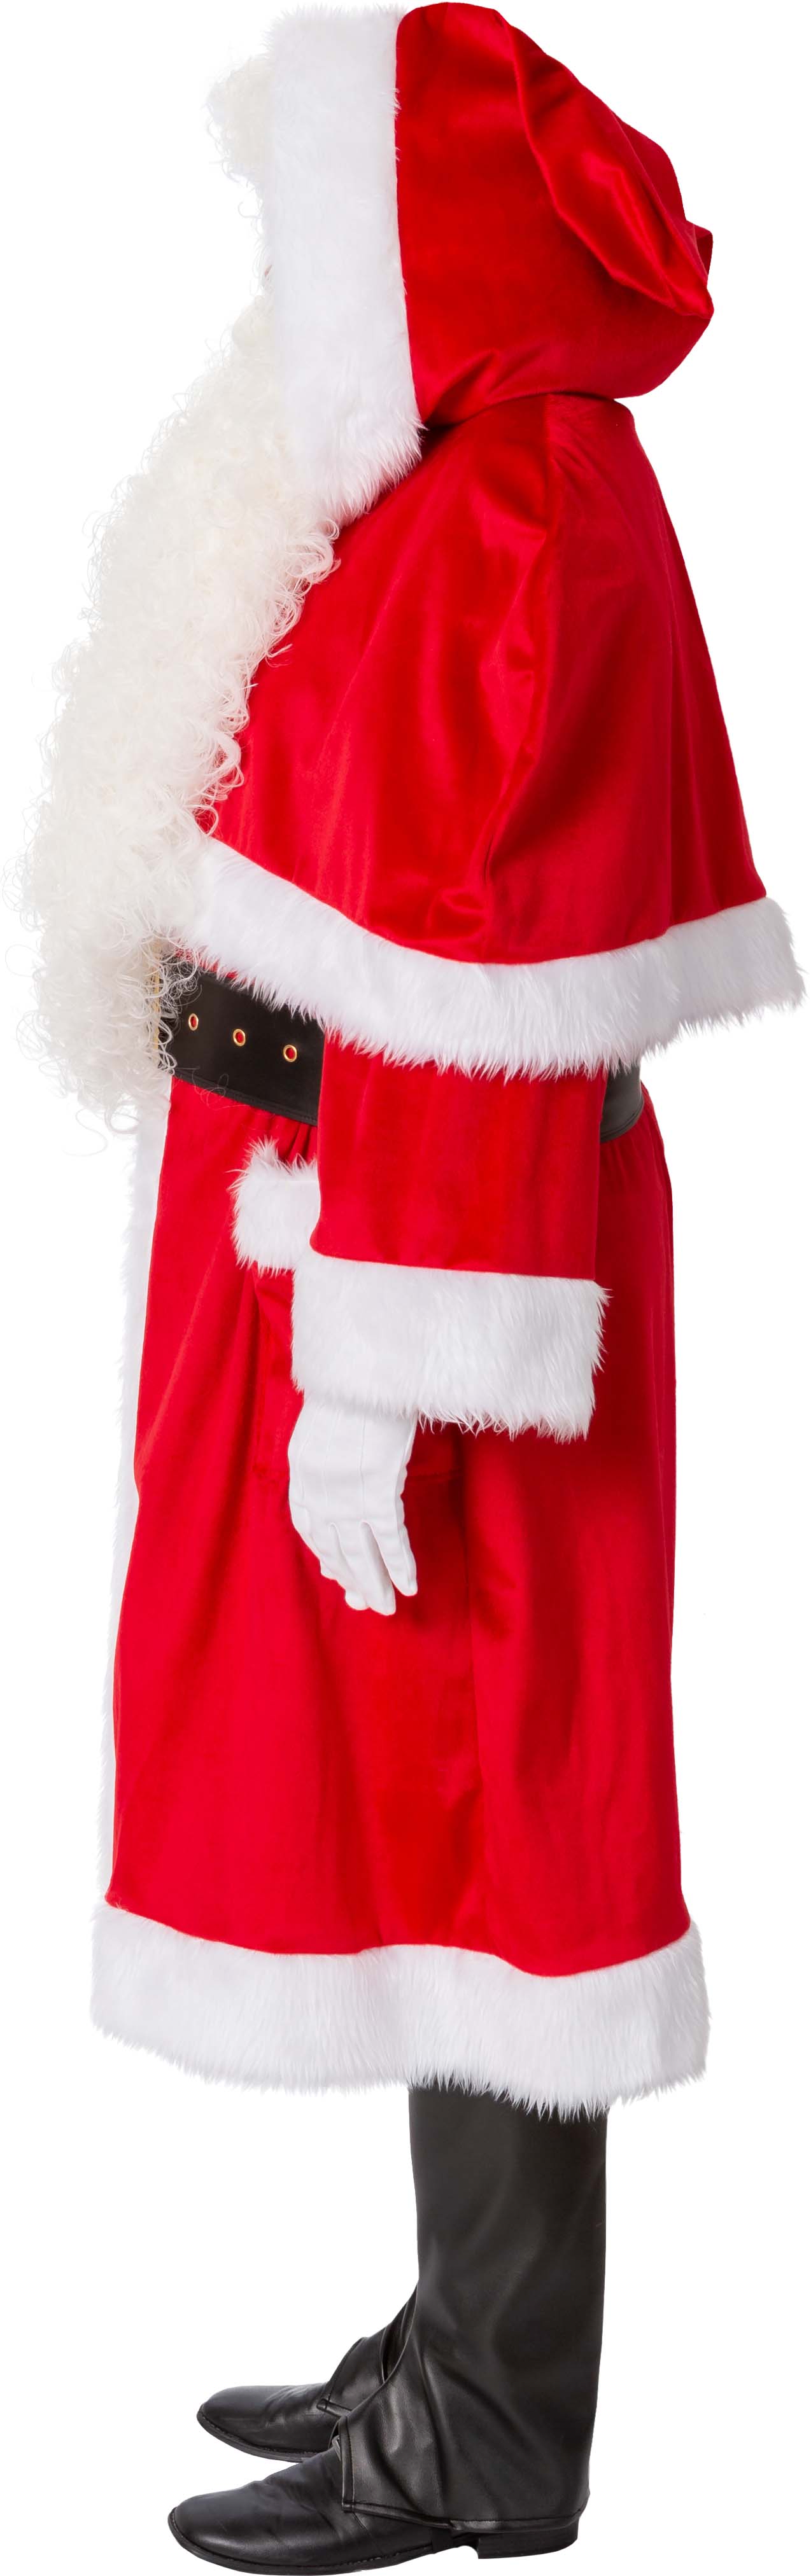 Weihnachtsmann-Mantel mit Pelerine